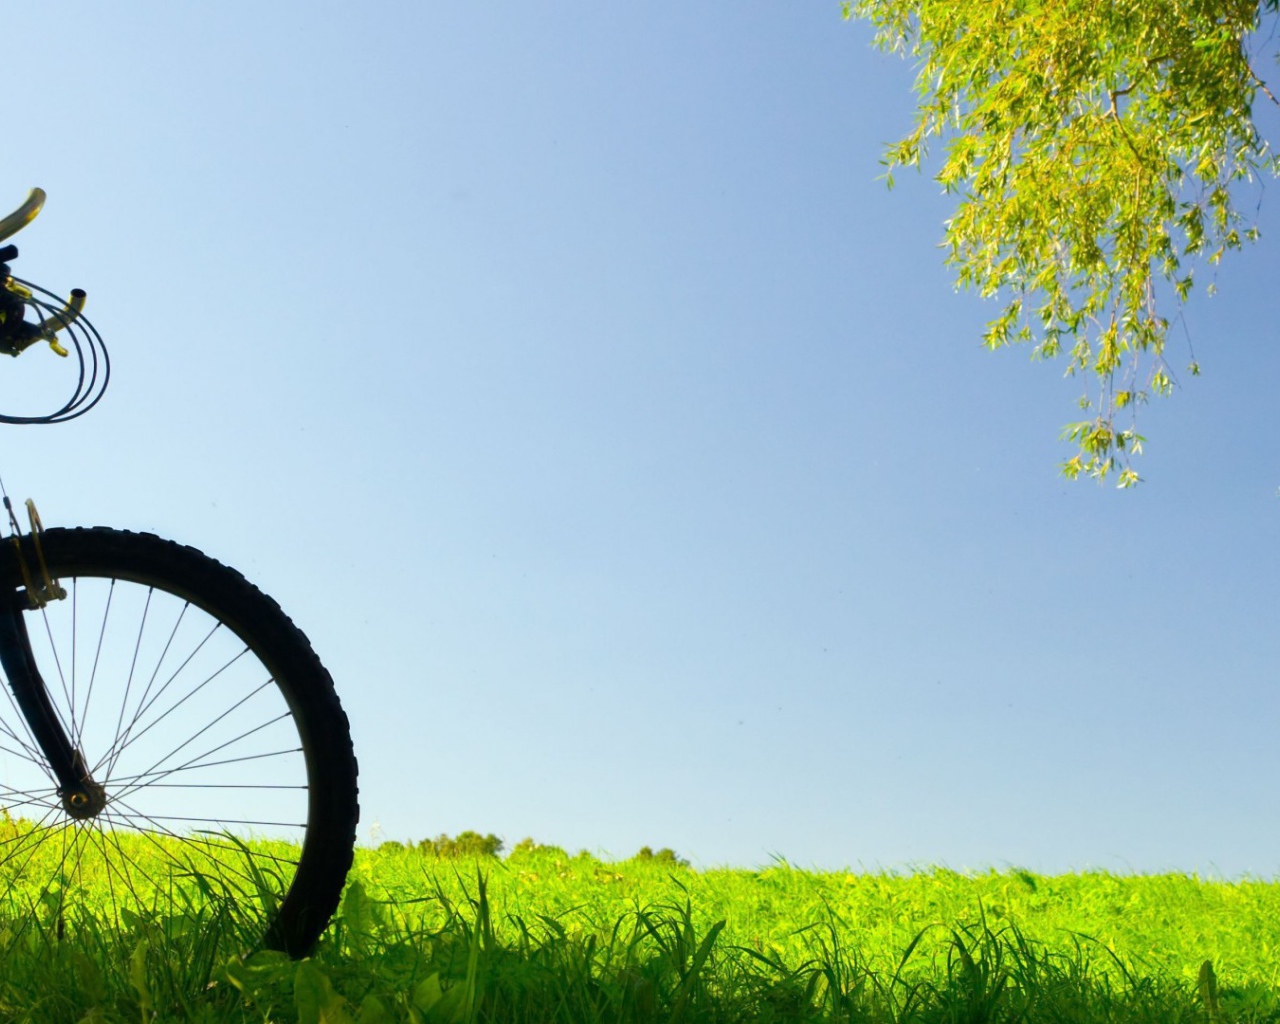 Велосипед в поле